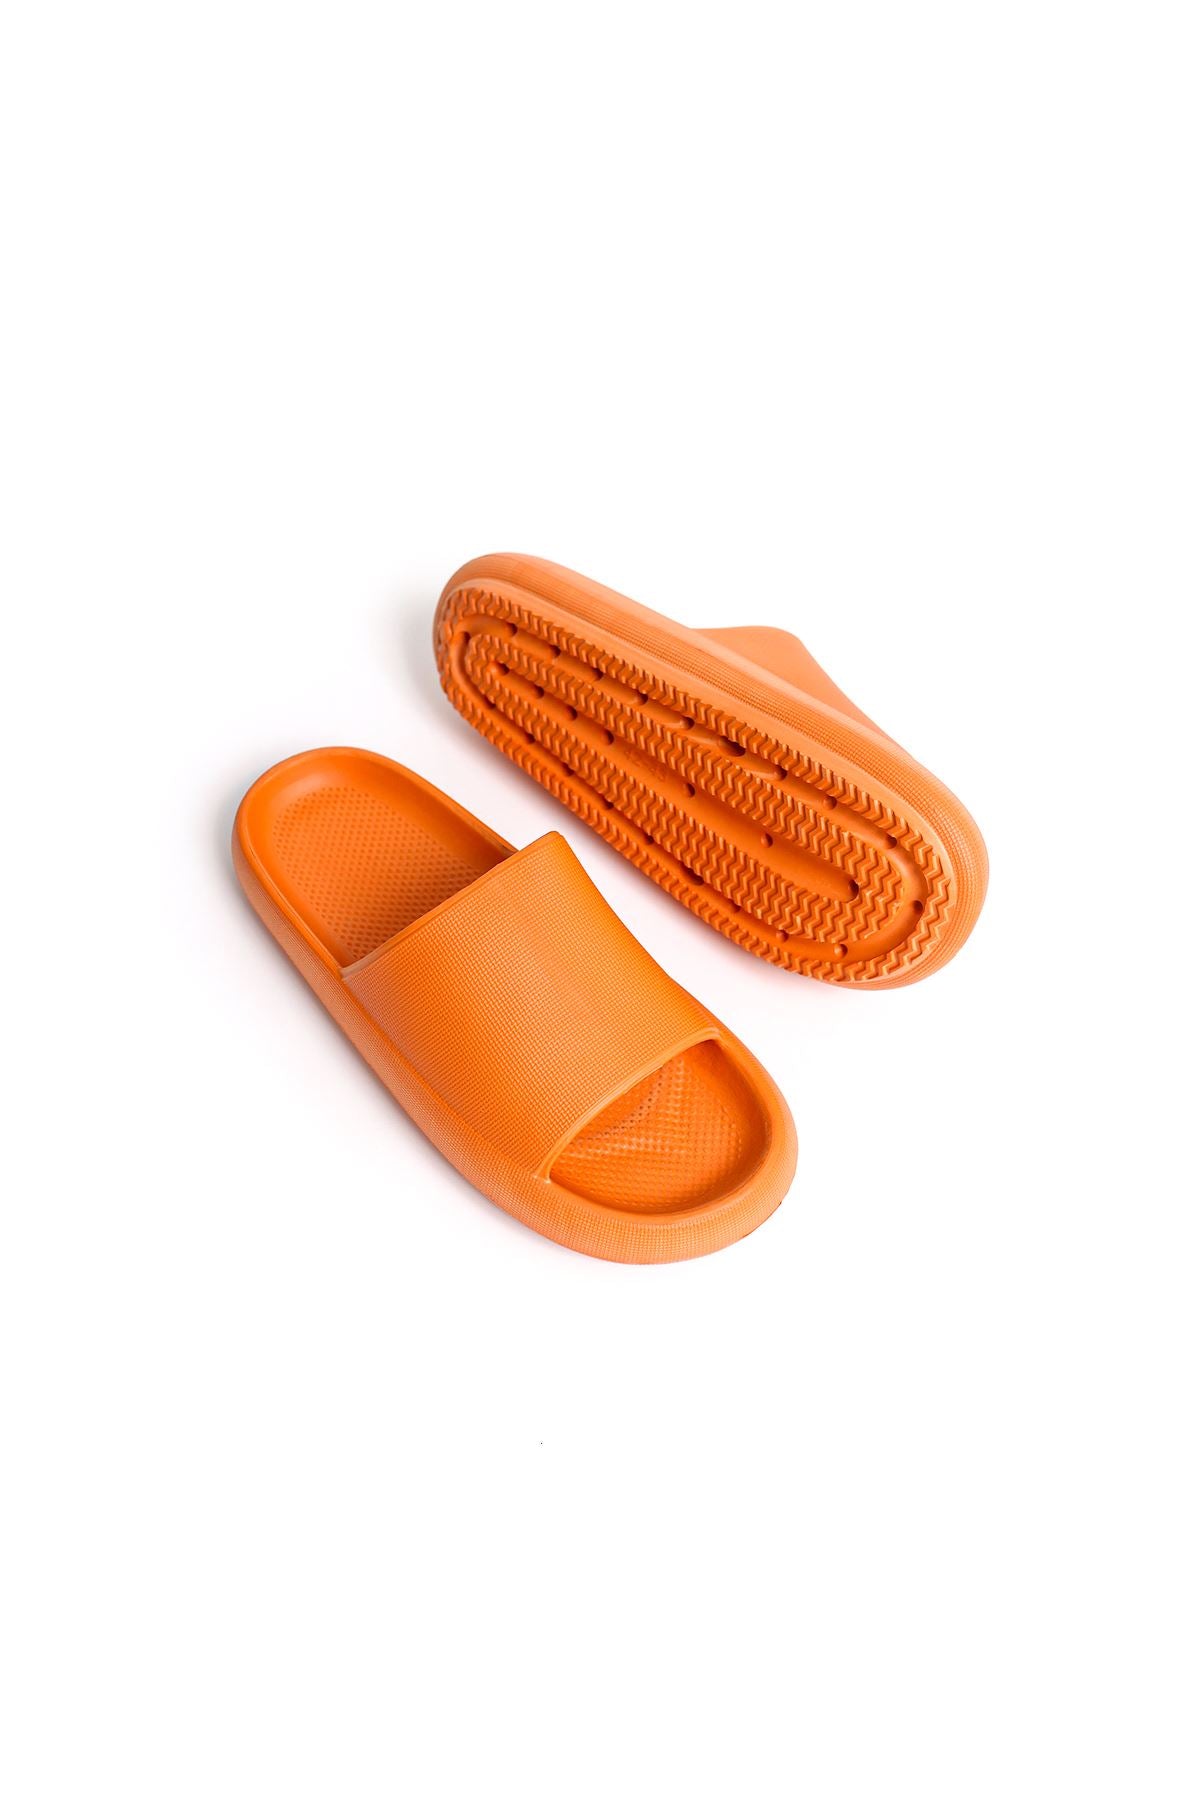 STM Design Polyurethane Men's Slippers ORANGE - STREET MODE ™